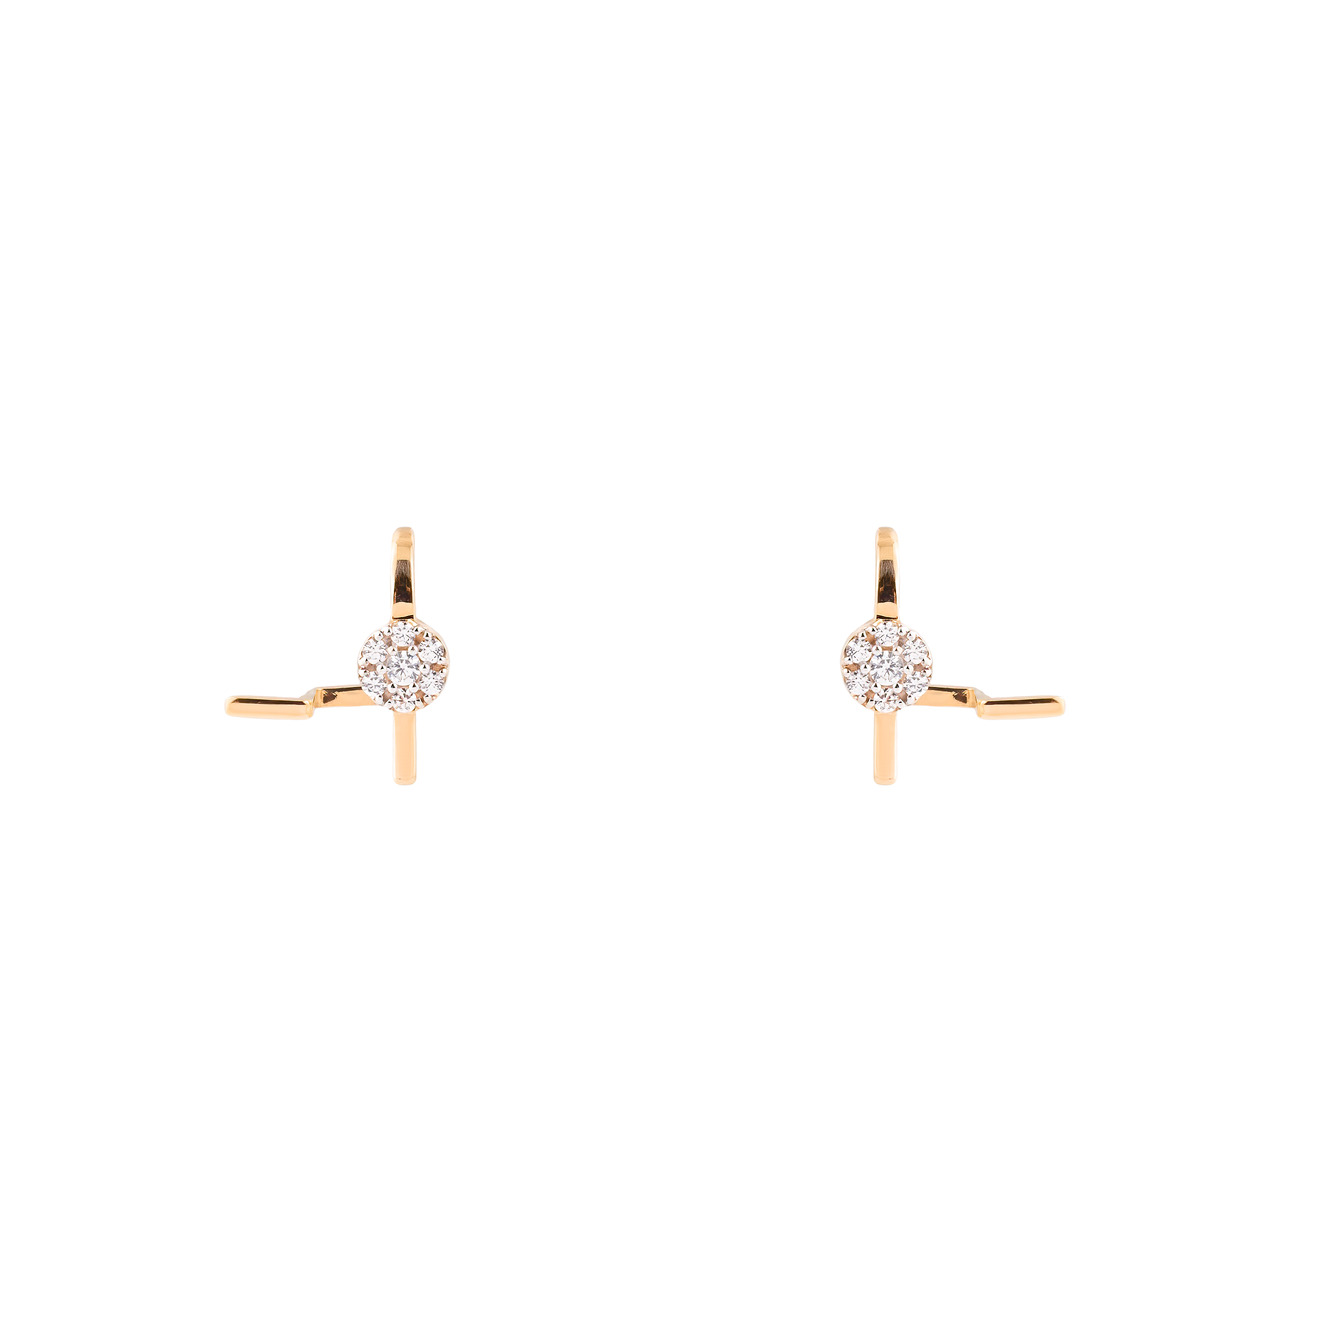 Herald Percy Diamonds Золотые серьги-клаймберы с крупным кристаллом herald percy круглые серебристые серьги с крупным кристаллом